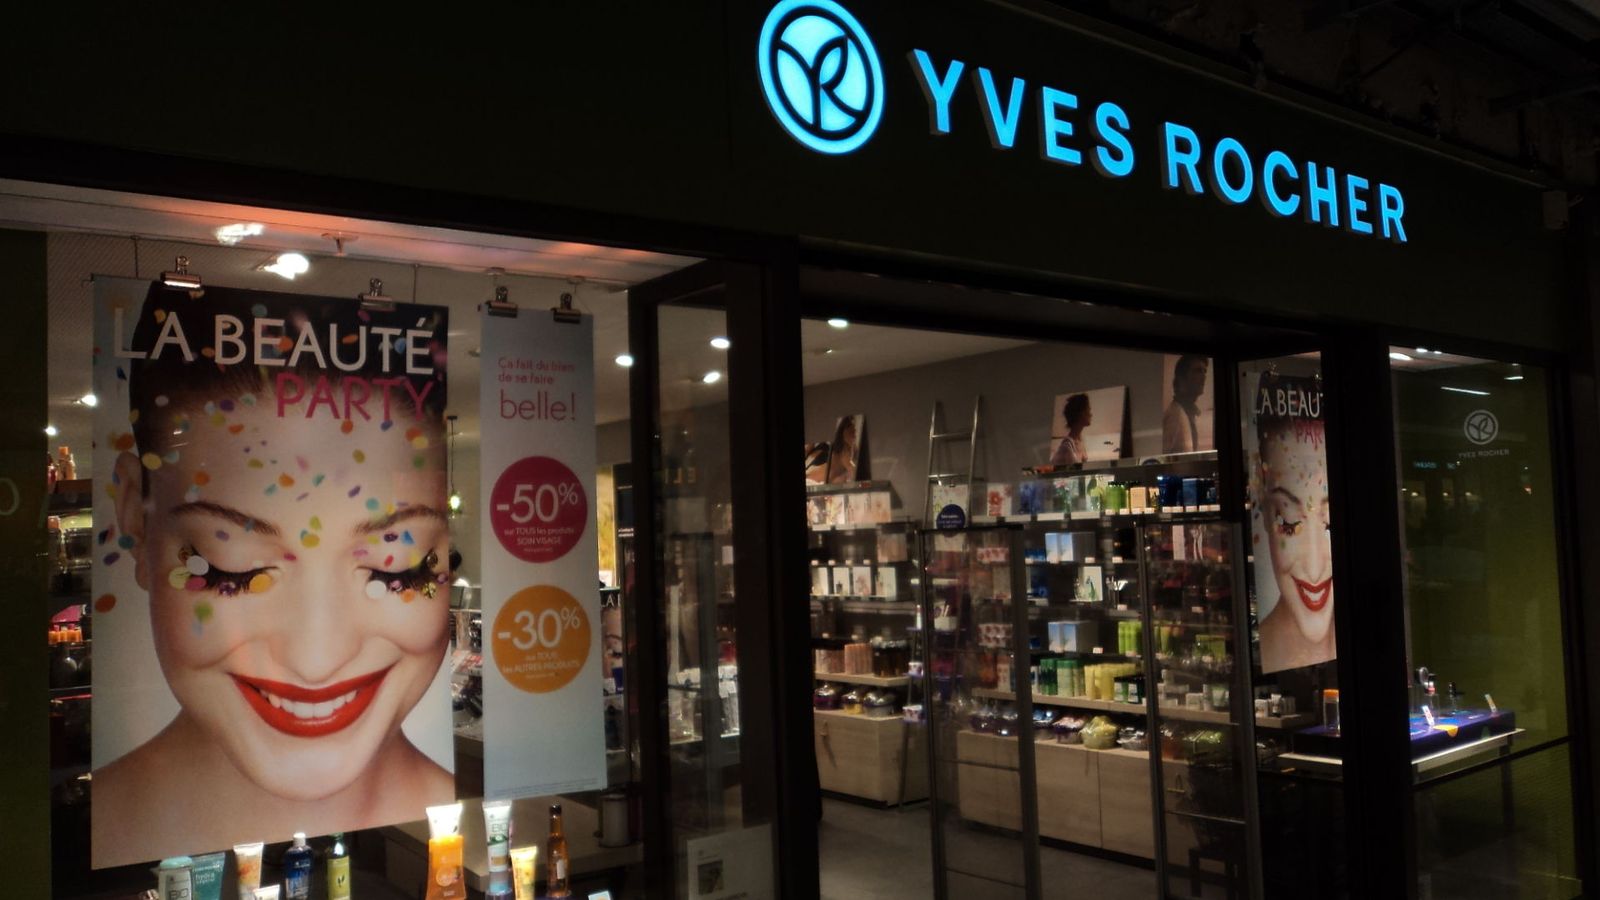 Foto: Una de las tiendas de Yves Rocher. (ErasmusOfParis, Wikipedia)